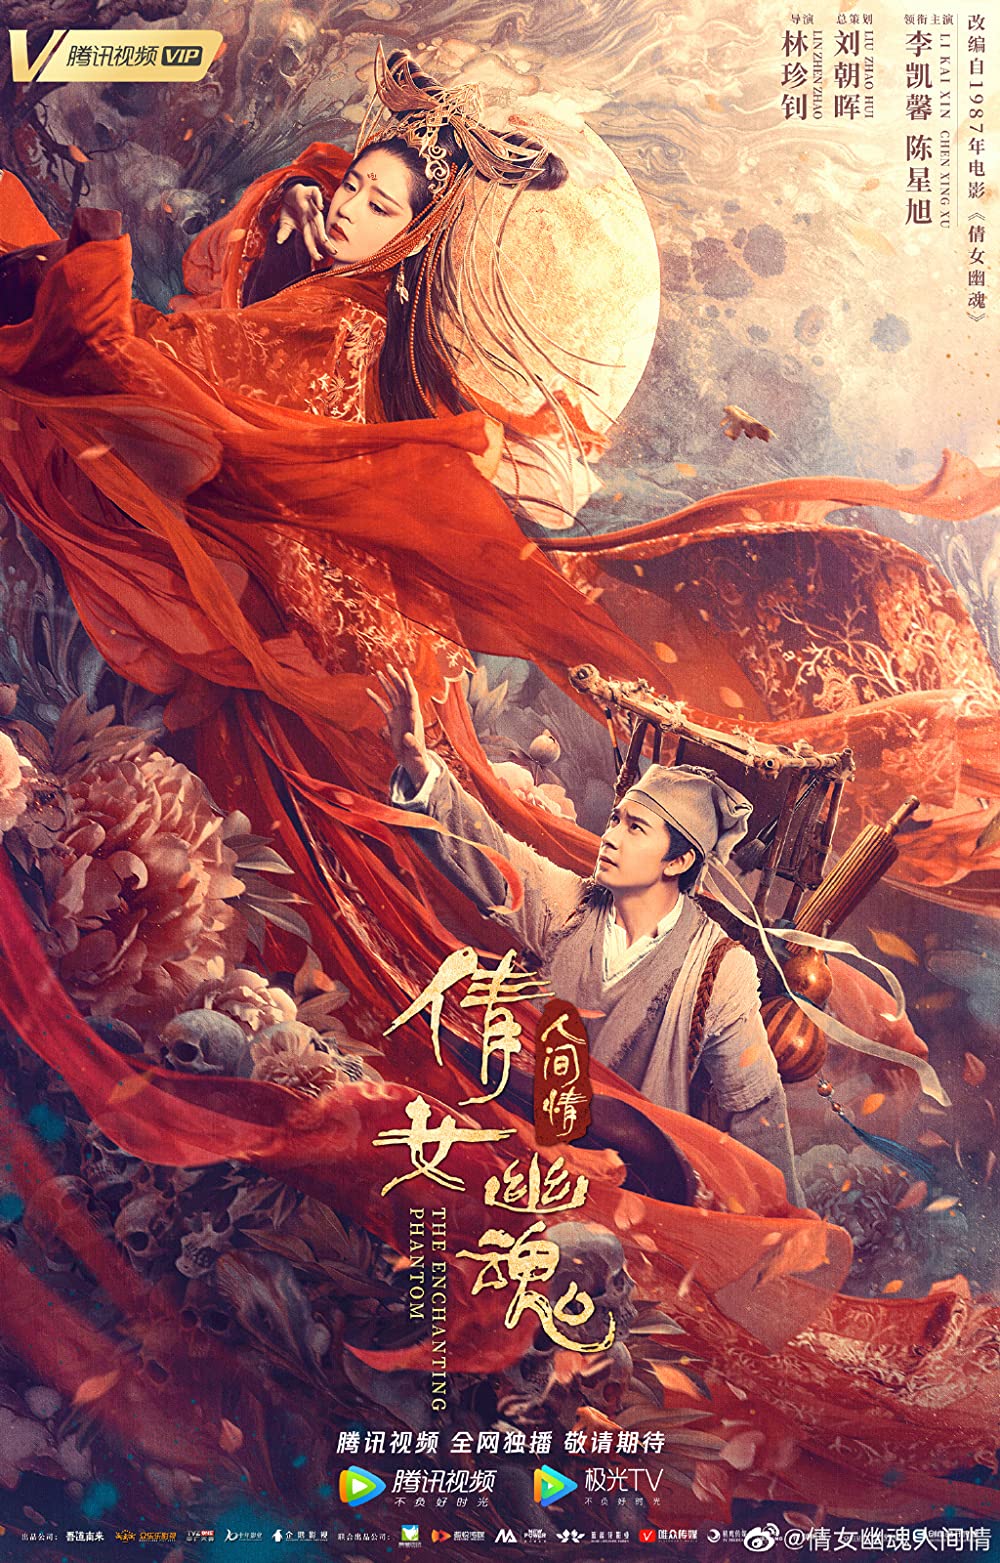 Tân Thiện Nữ U Hồn – The Enchanting Phantom (2020)'s poster